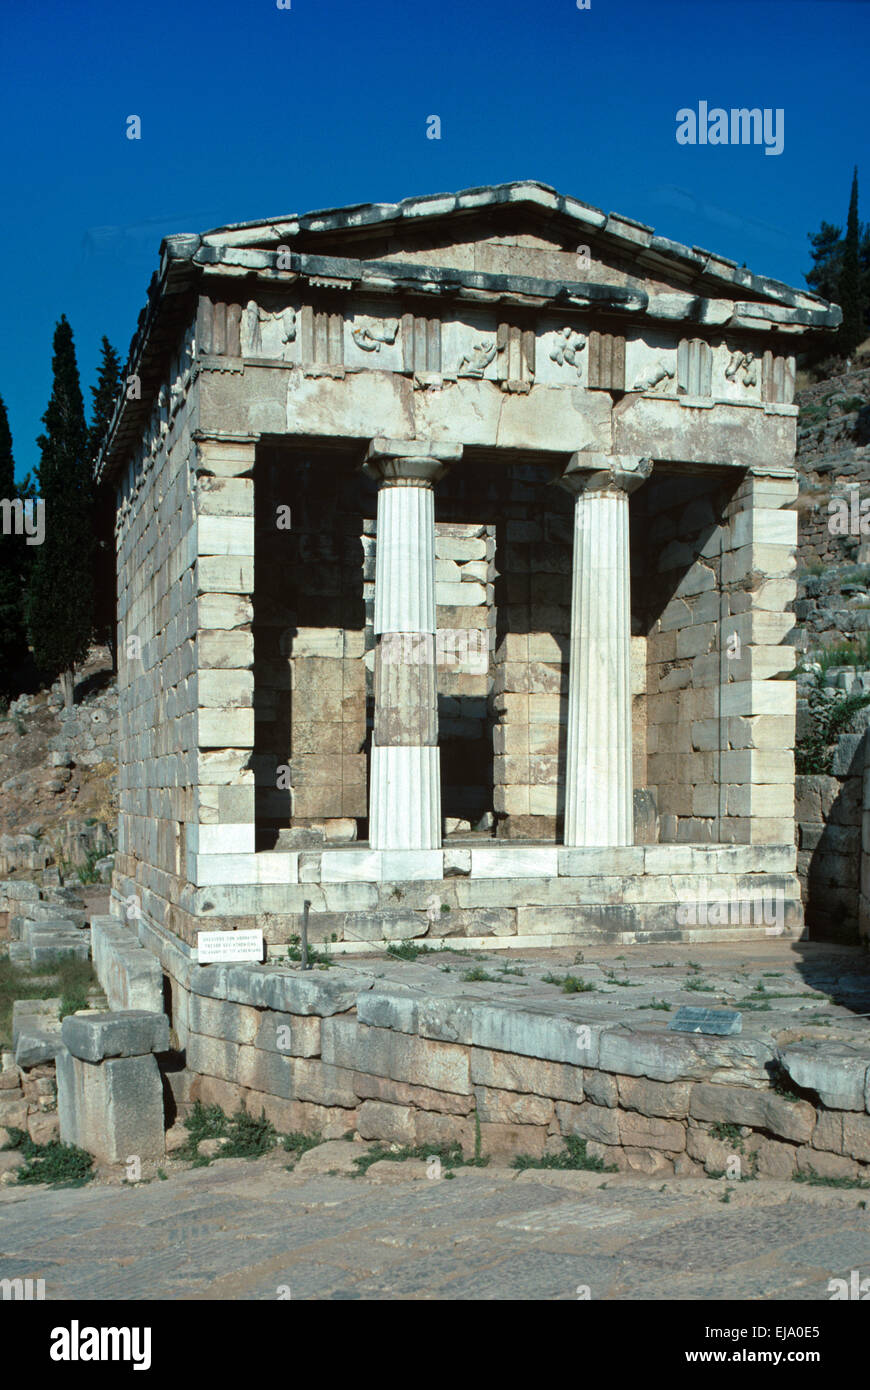 Die antike oder alte Schatzkammer gebaut im klassischen griechischen Stil bei Delphi Griechenland Stockfoto